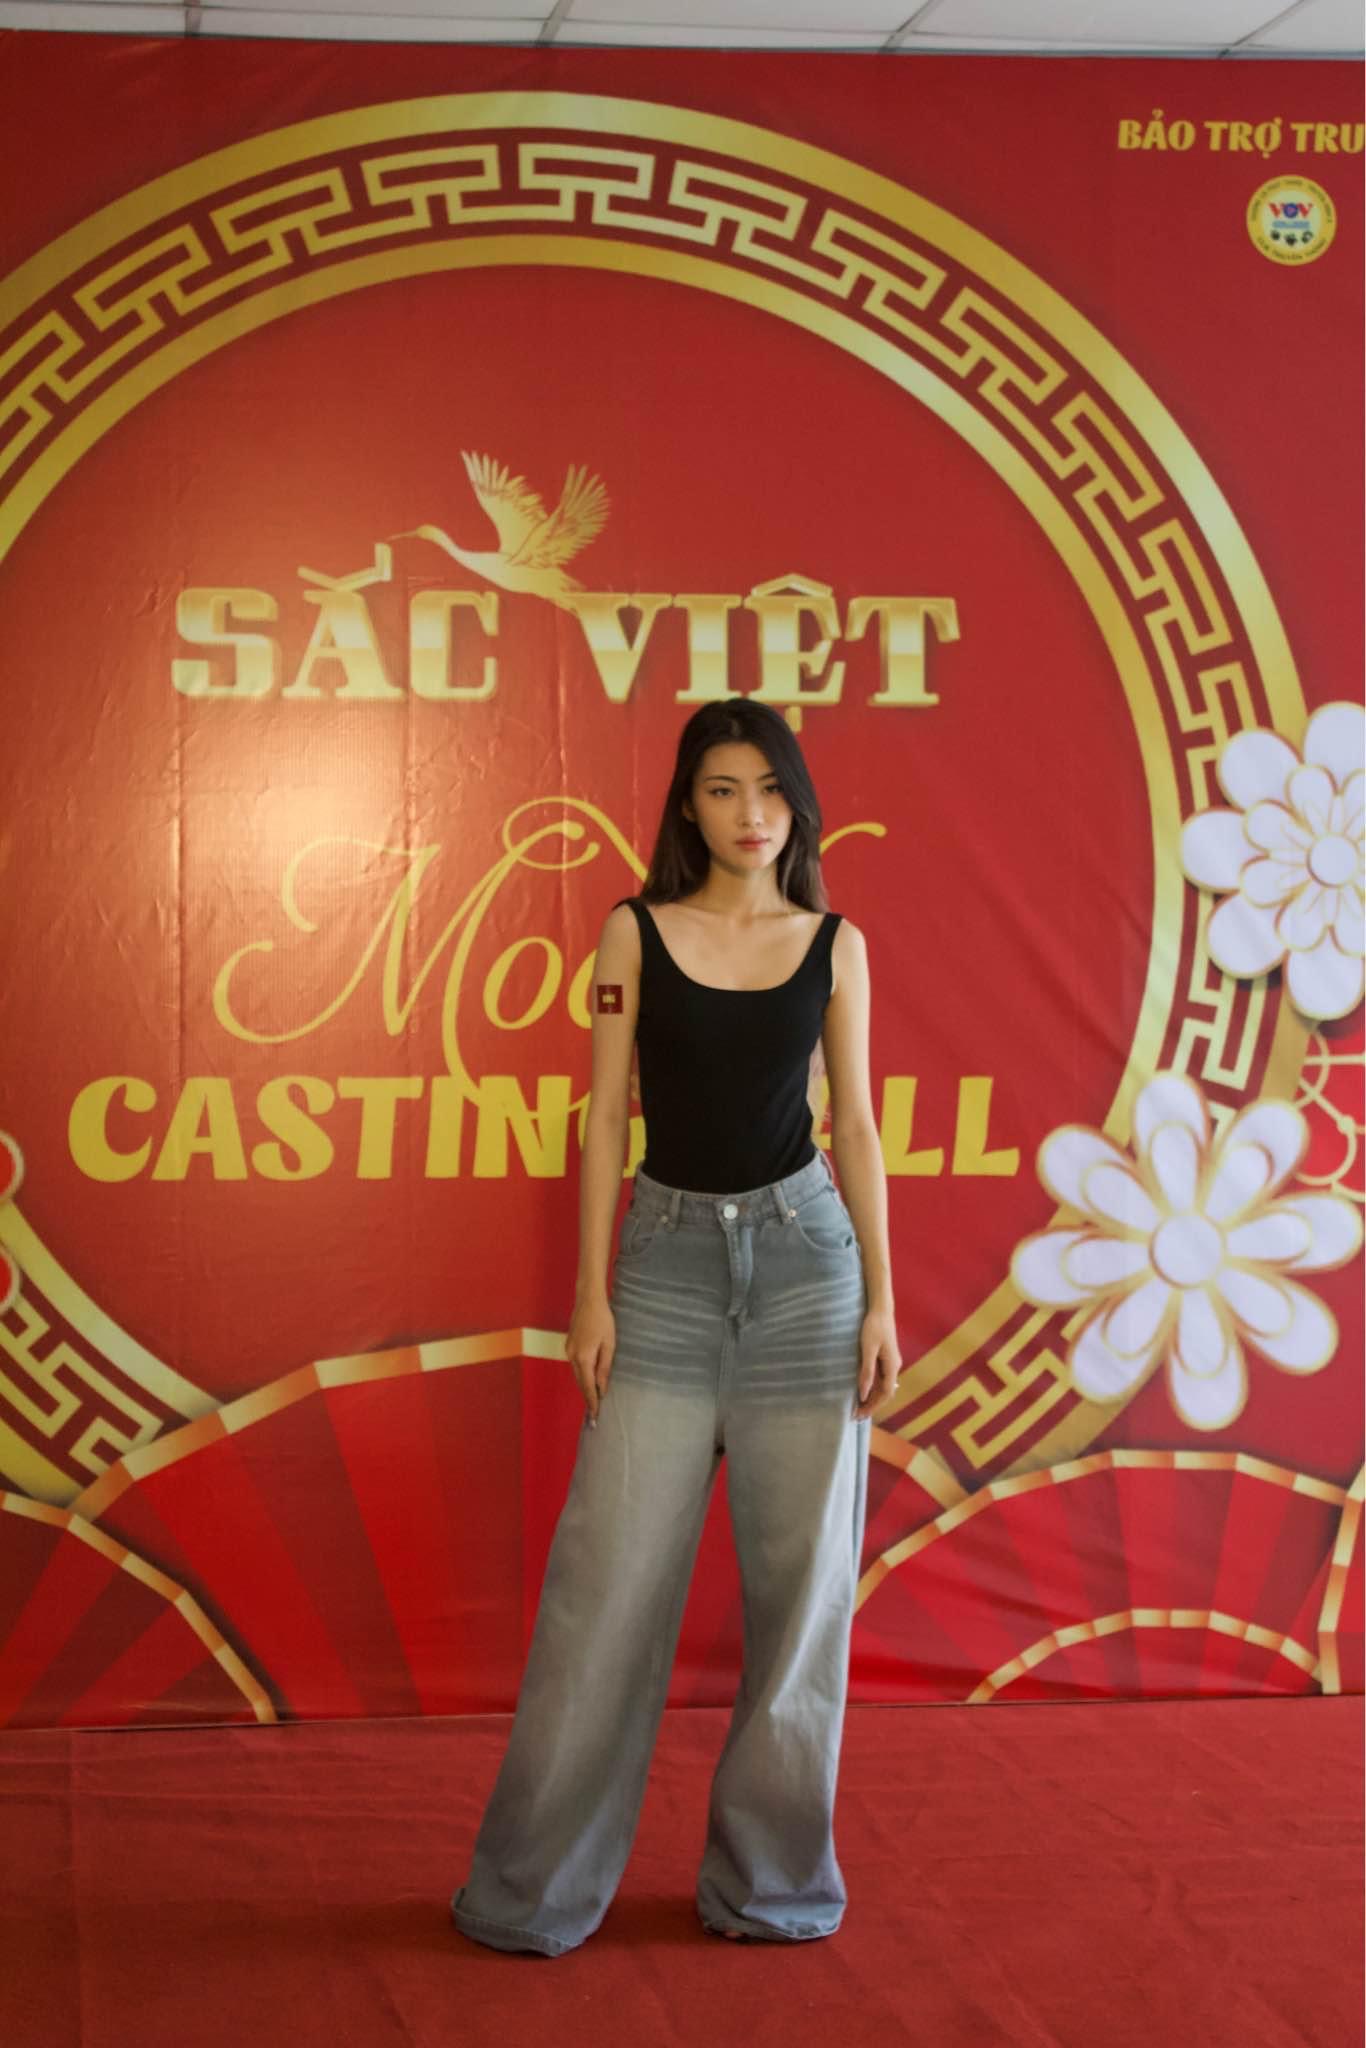 Đông đảo người mẫu trẻ tham gia casting Sắc Việt fashion show - 3